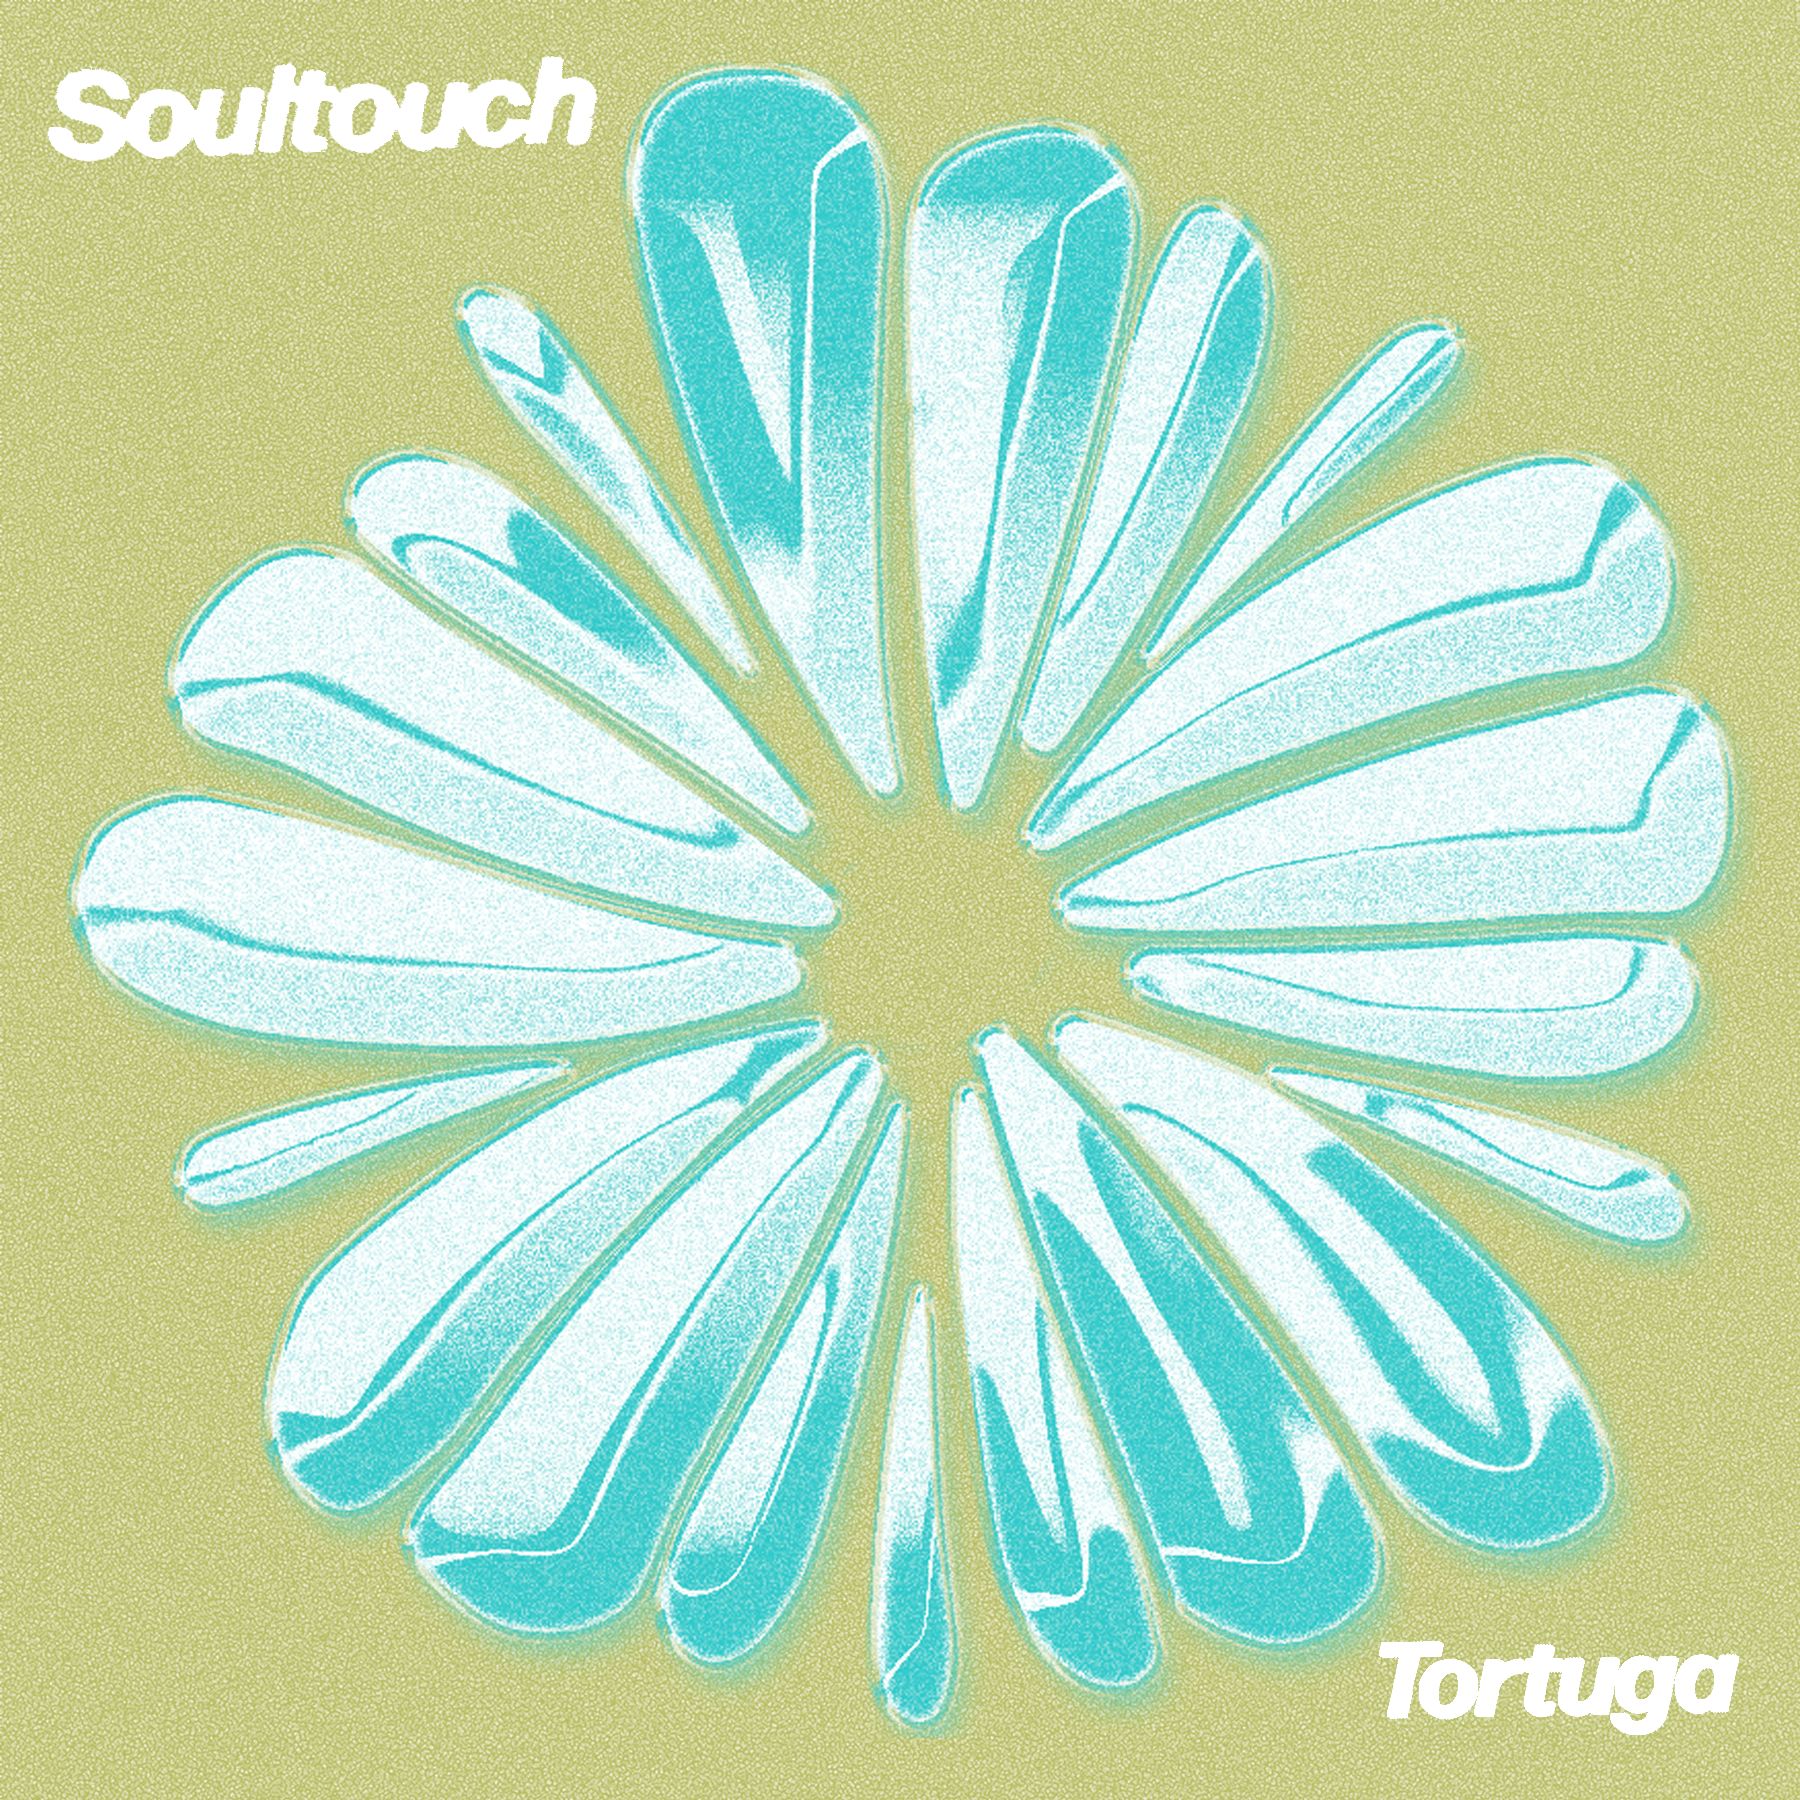 Descarca PREMIERE : Tortuga - Soultouch